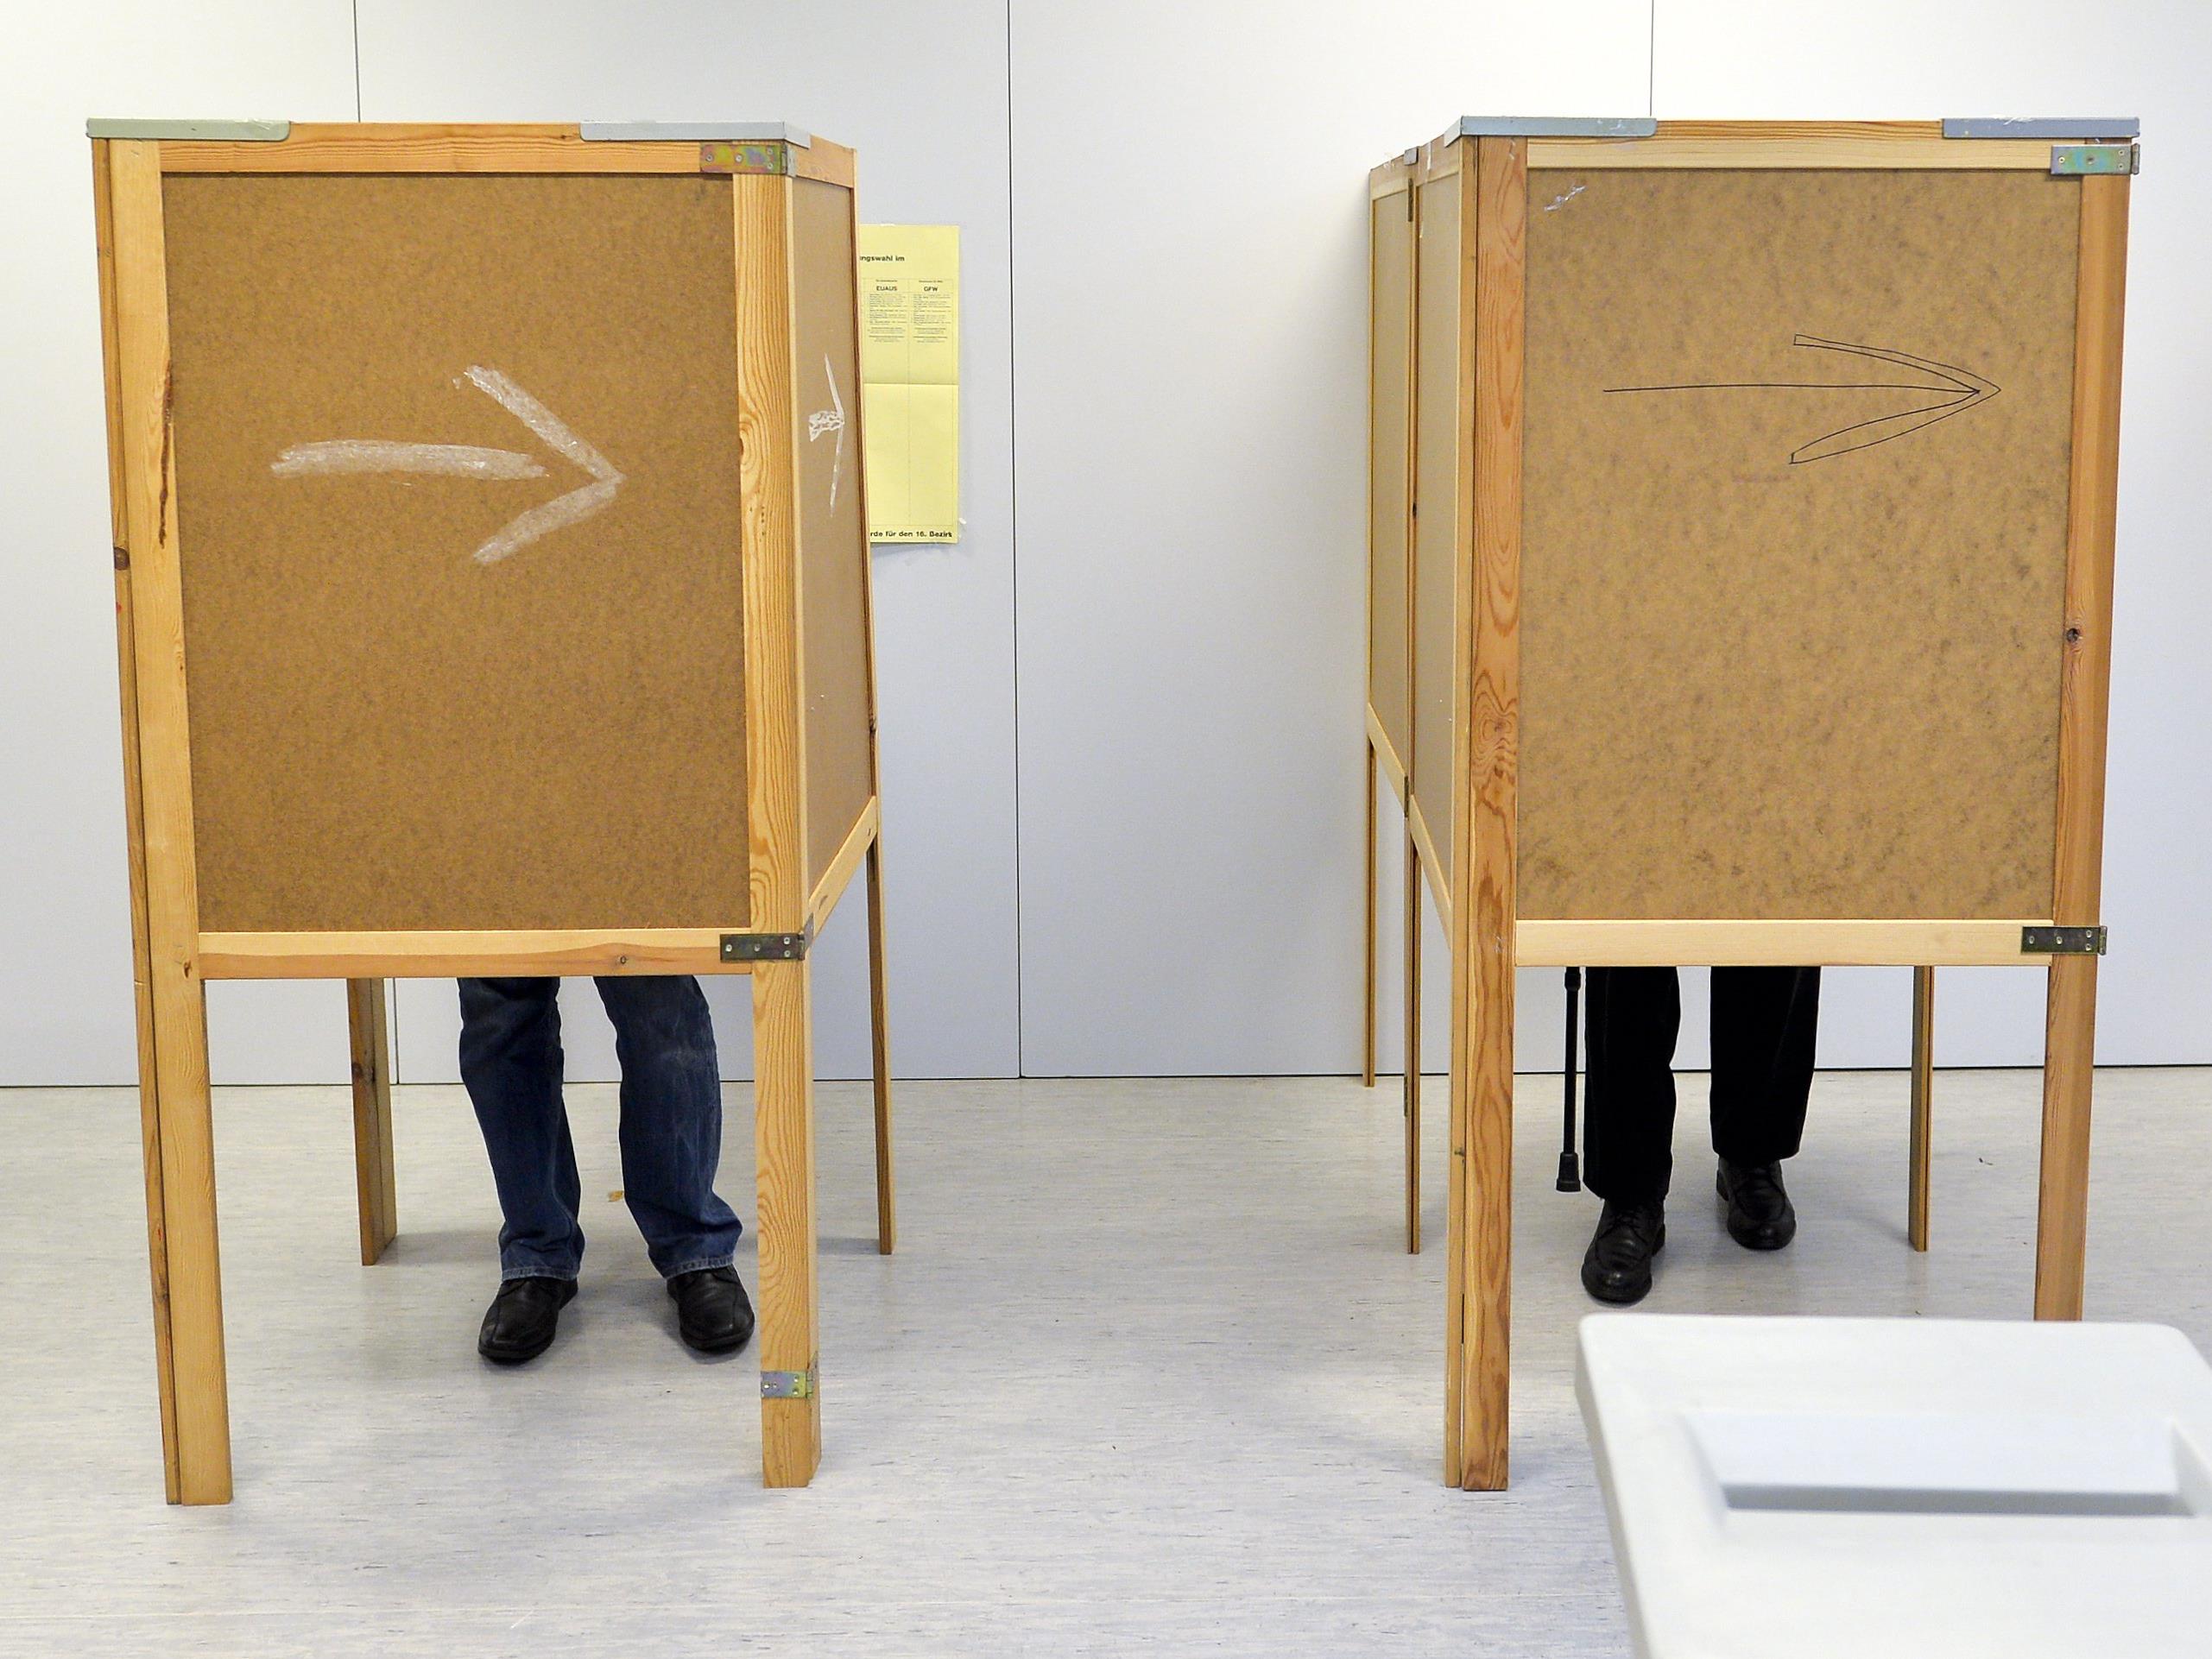 Die Wahl in der Leopoldstadt ist zugleich Testlauf für die BP-Wahl